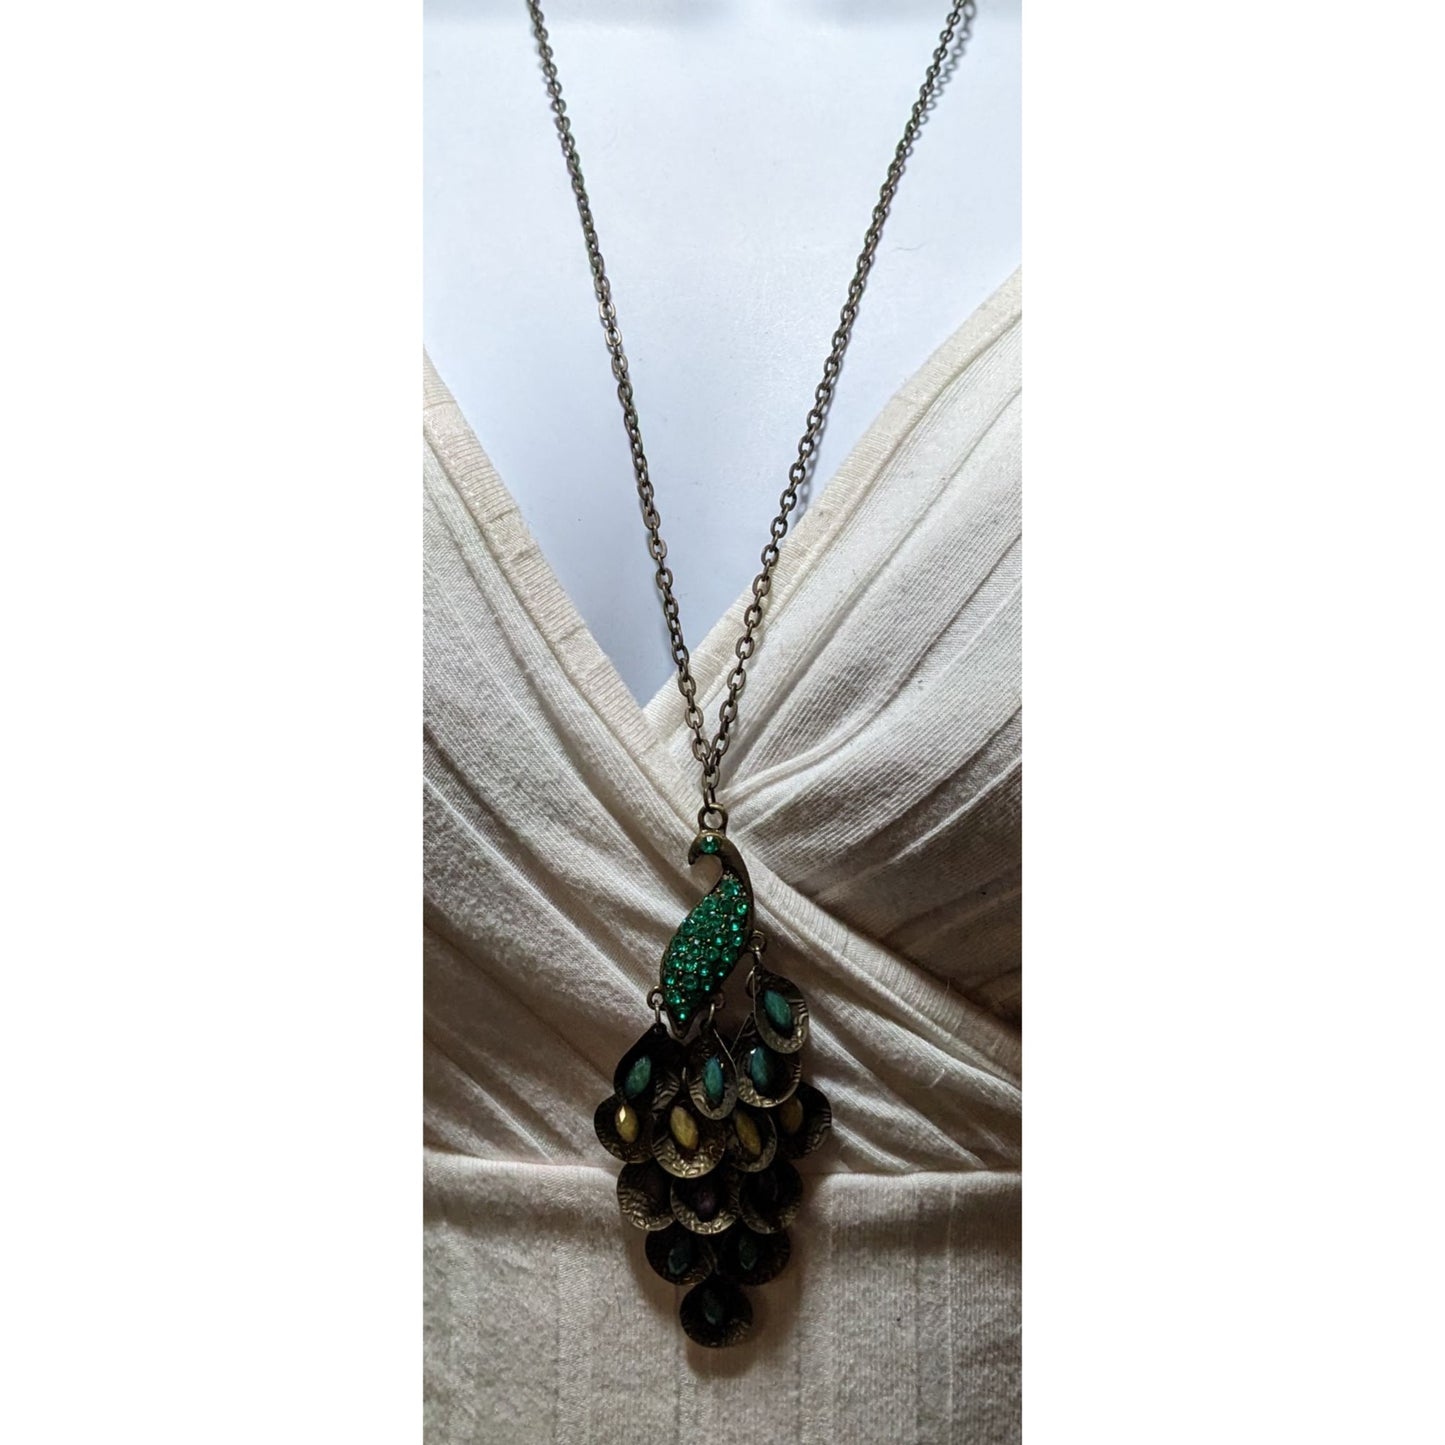 Green Bohemian Peacock Necklace